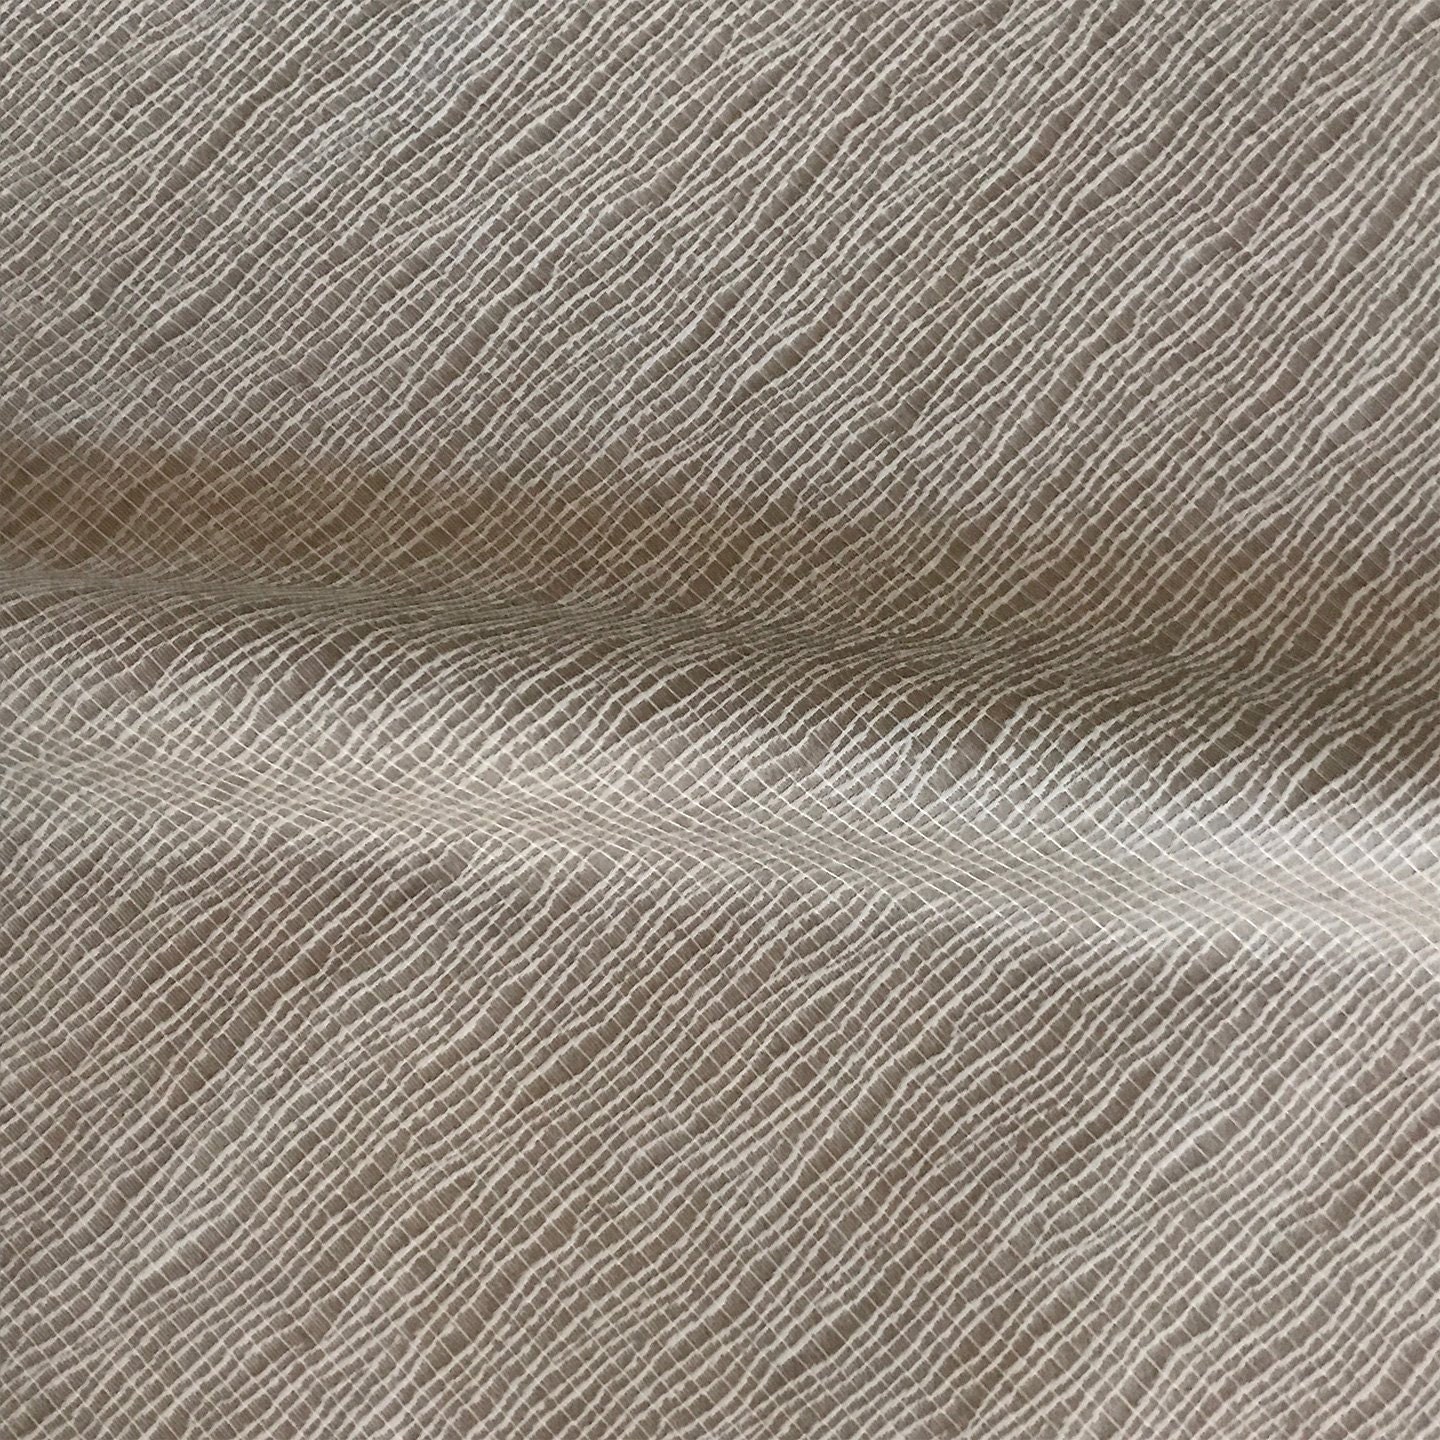 Beige Zebra Damask Upholstery Fabric | Etsy